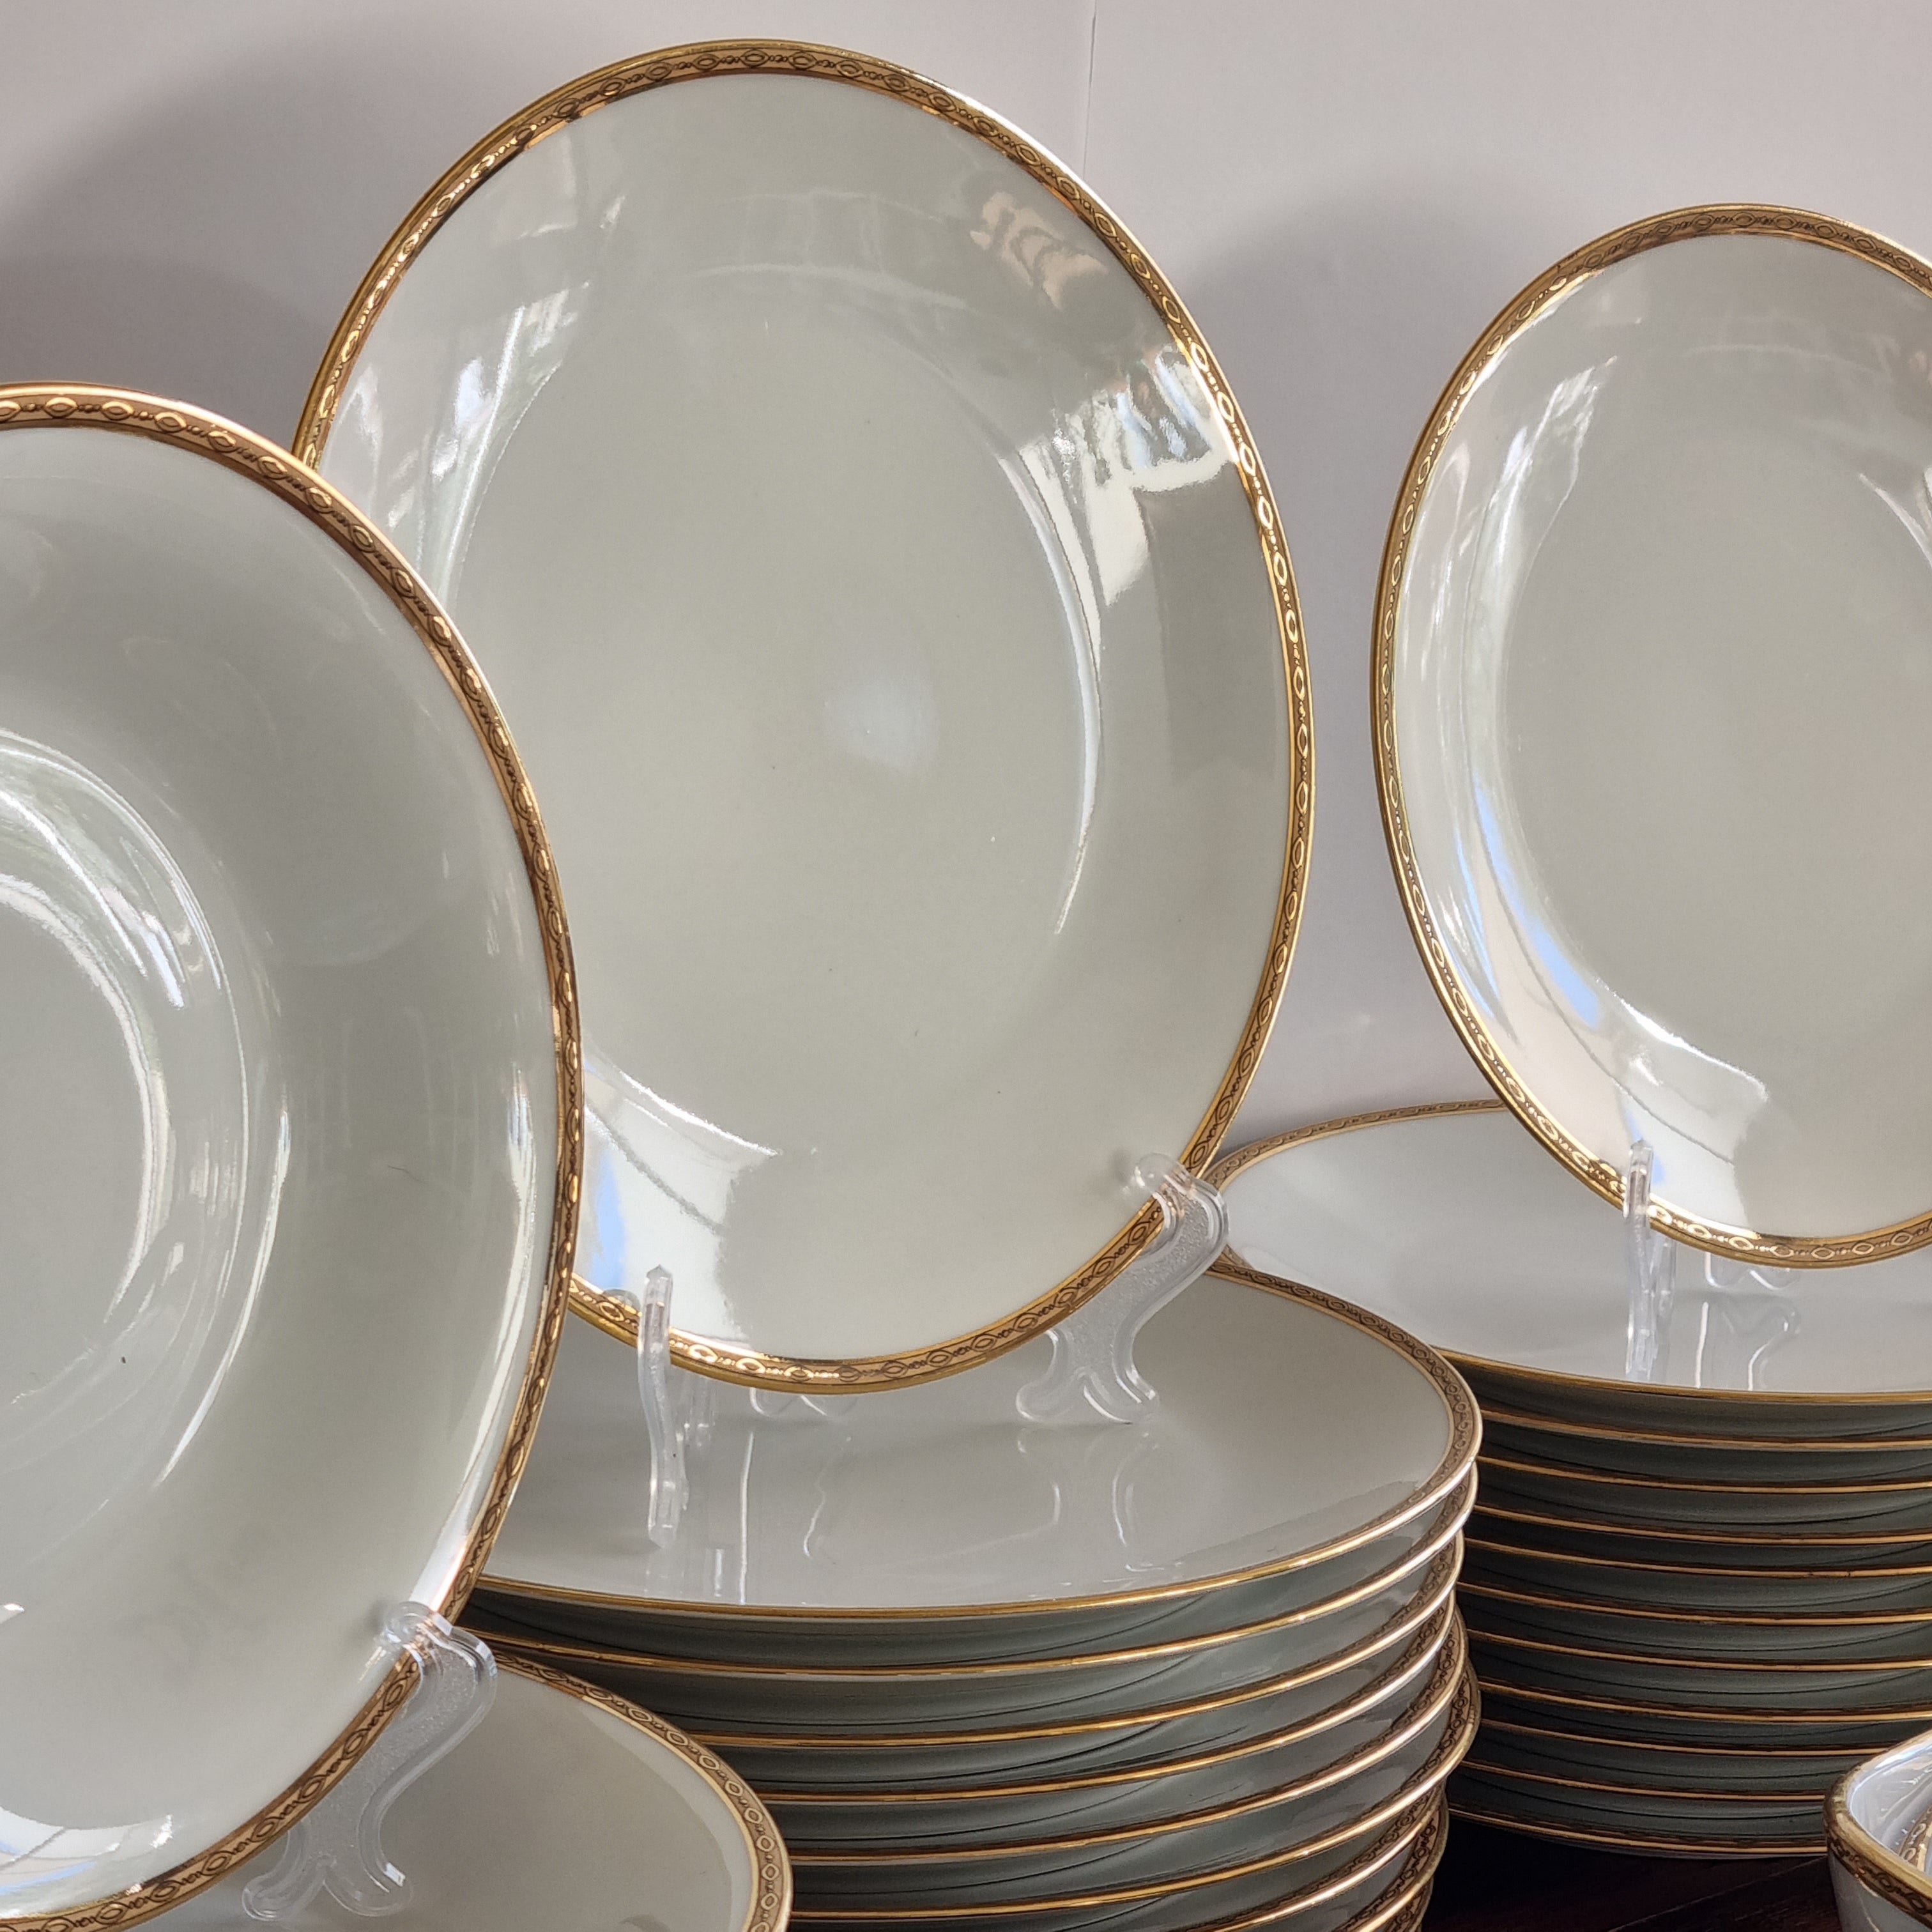 Set de 6 platos llanos de porcelana blanca con doble filo de oro